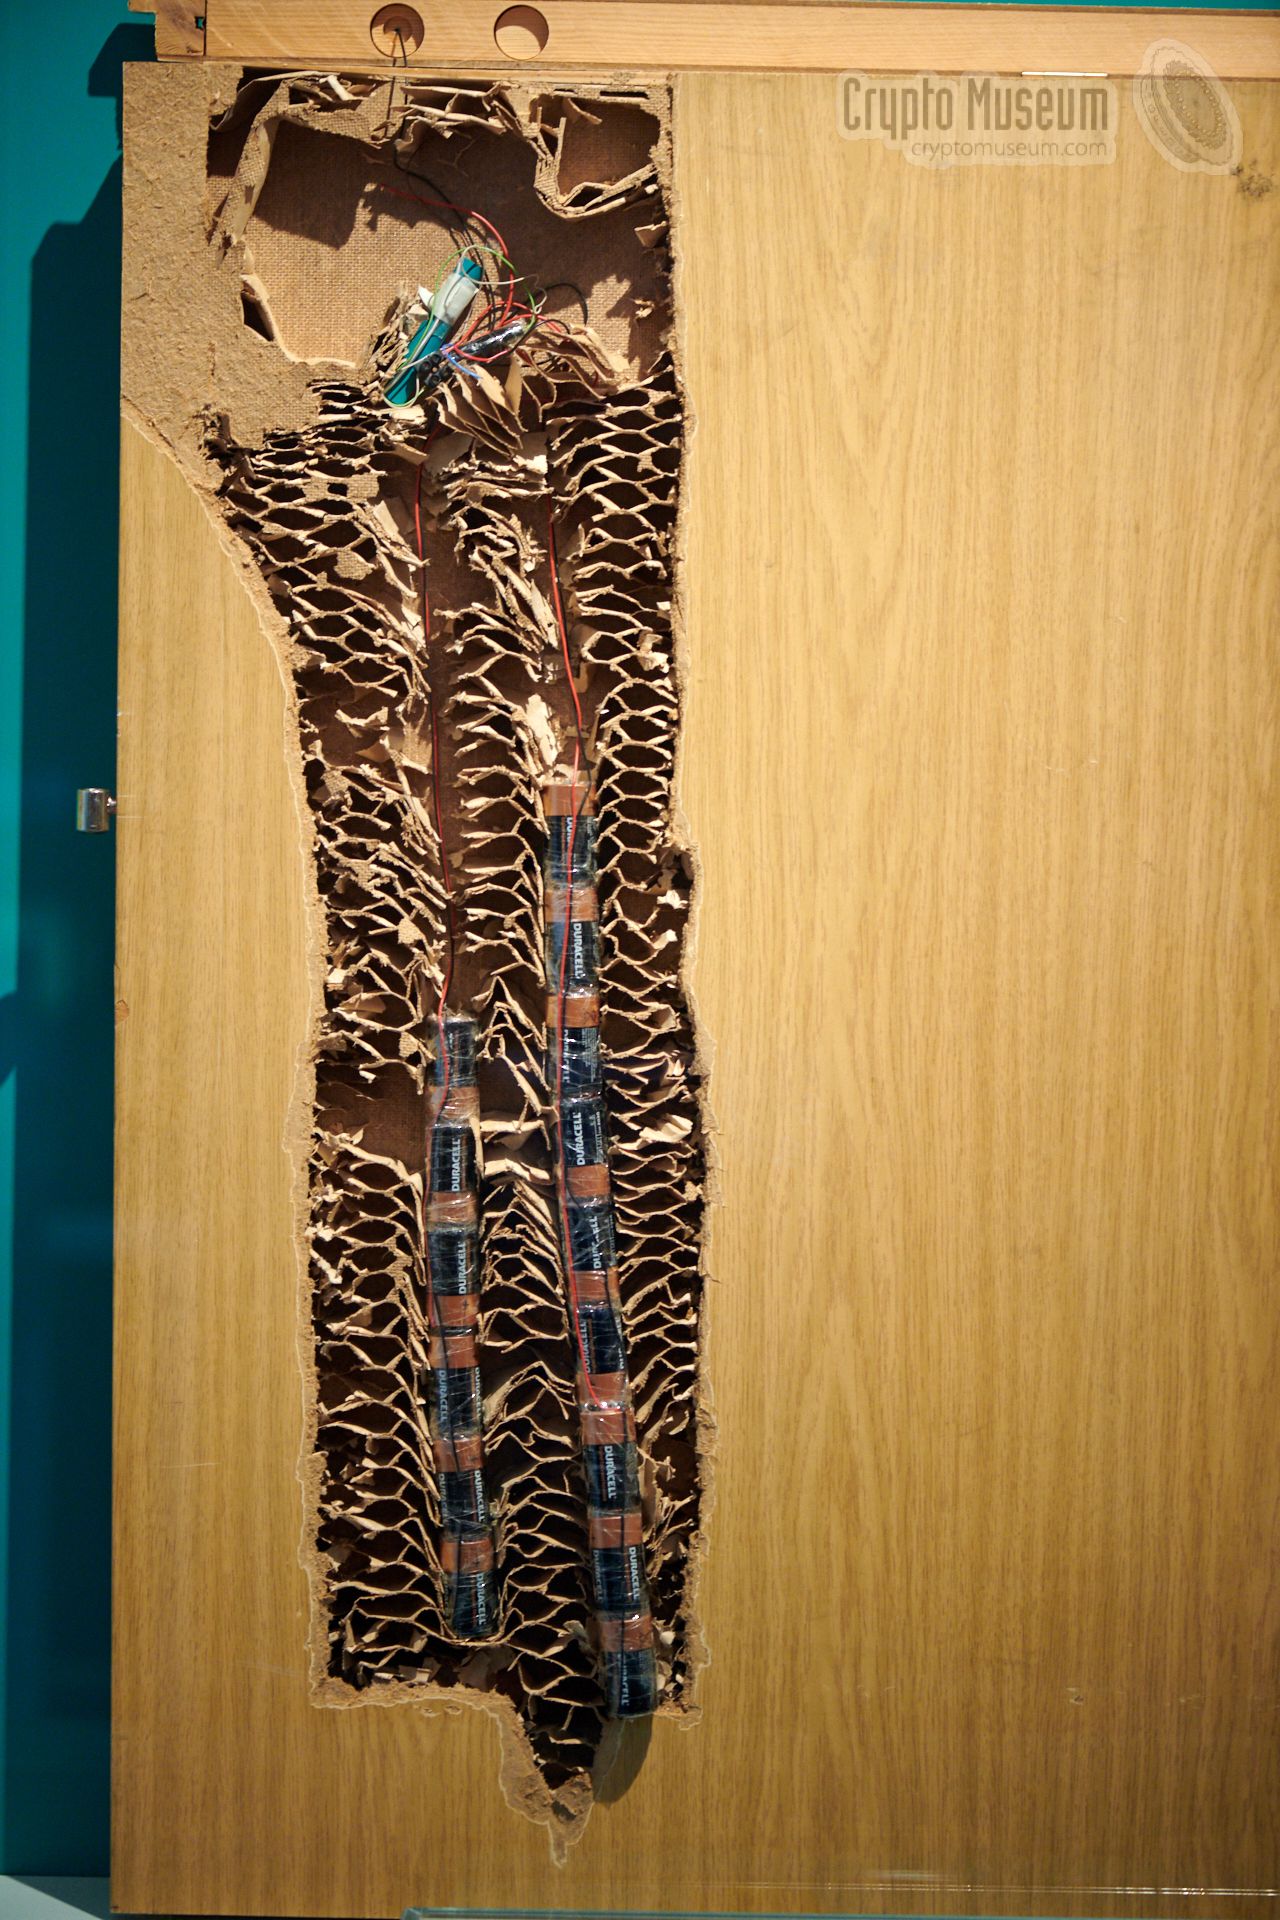 Bugged hotel room door, as shown in the Stasi Museum in Berlin